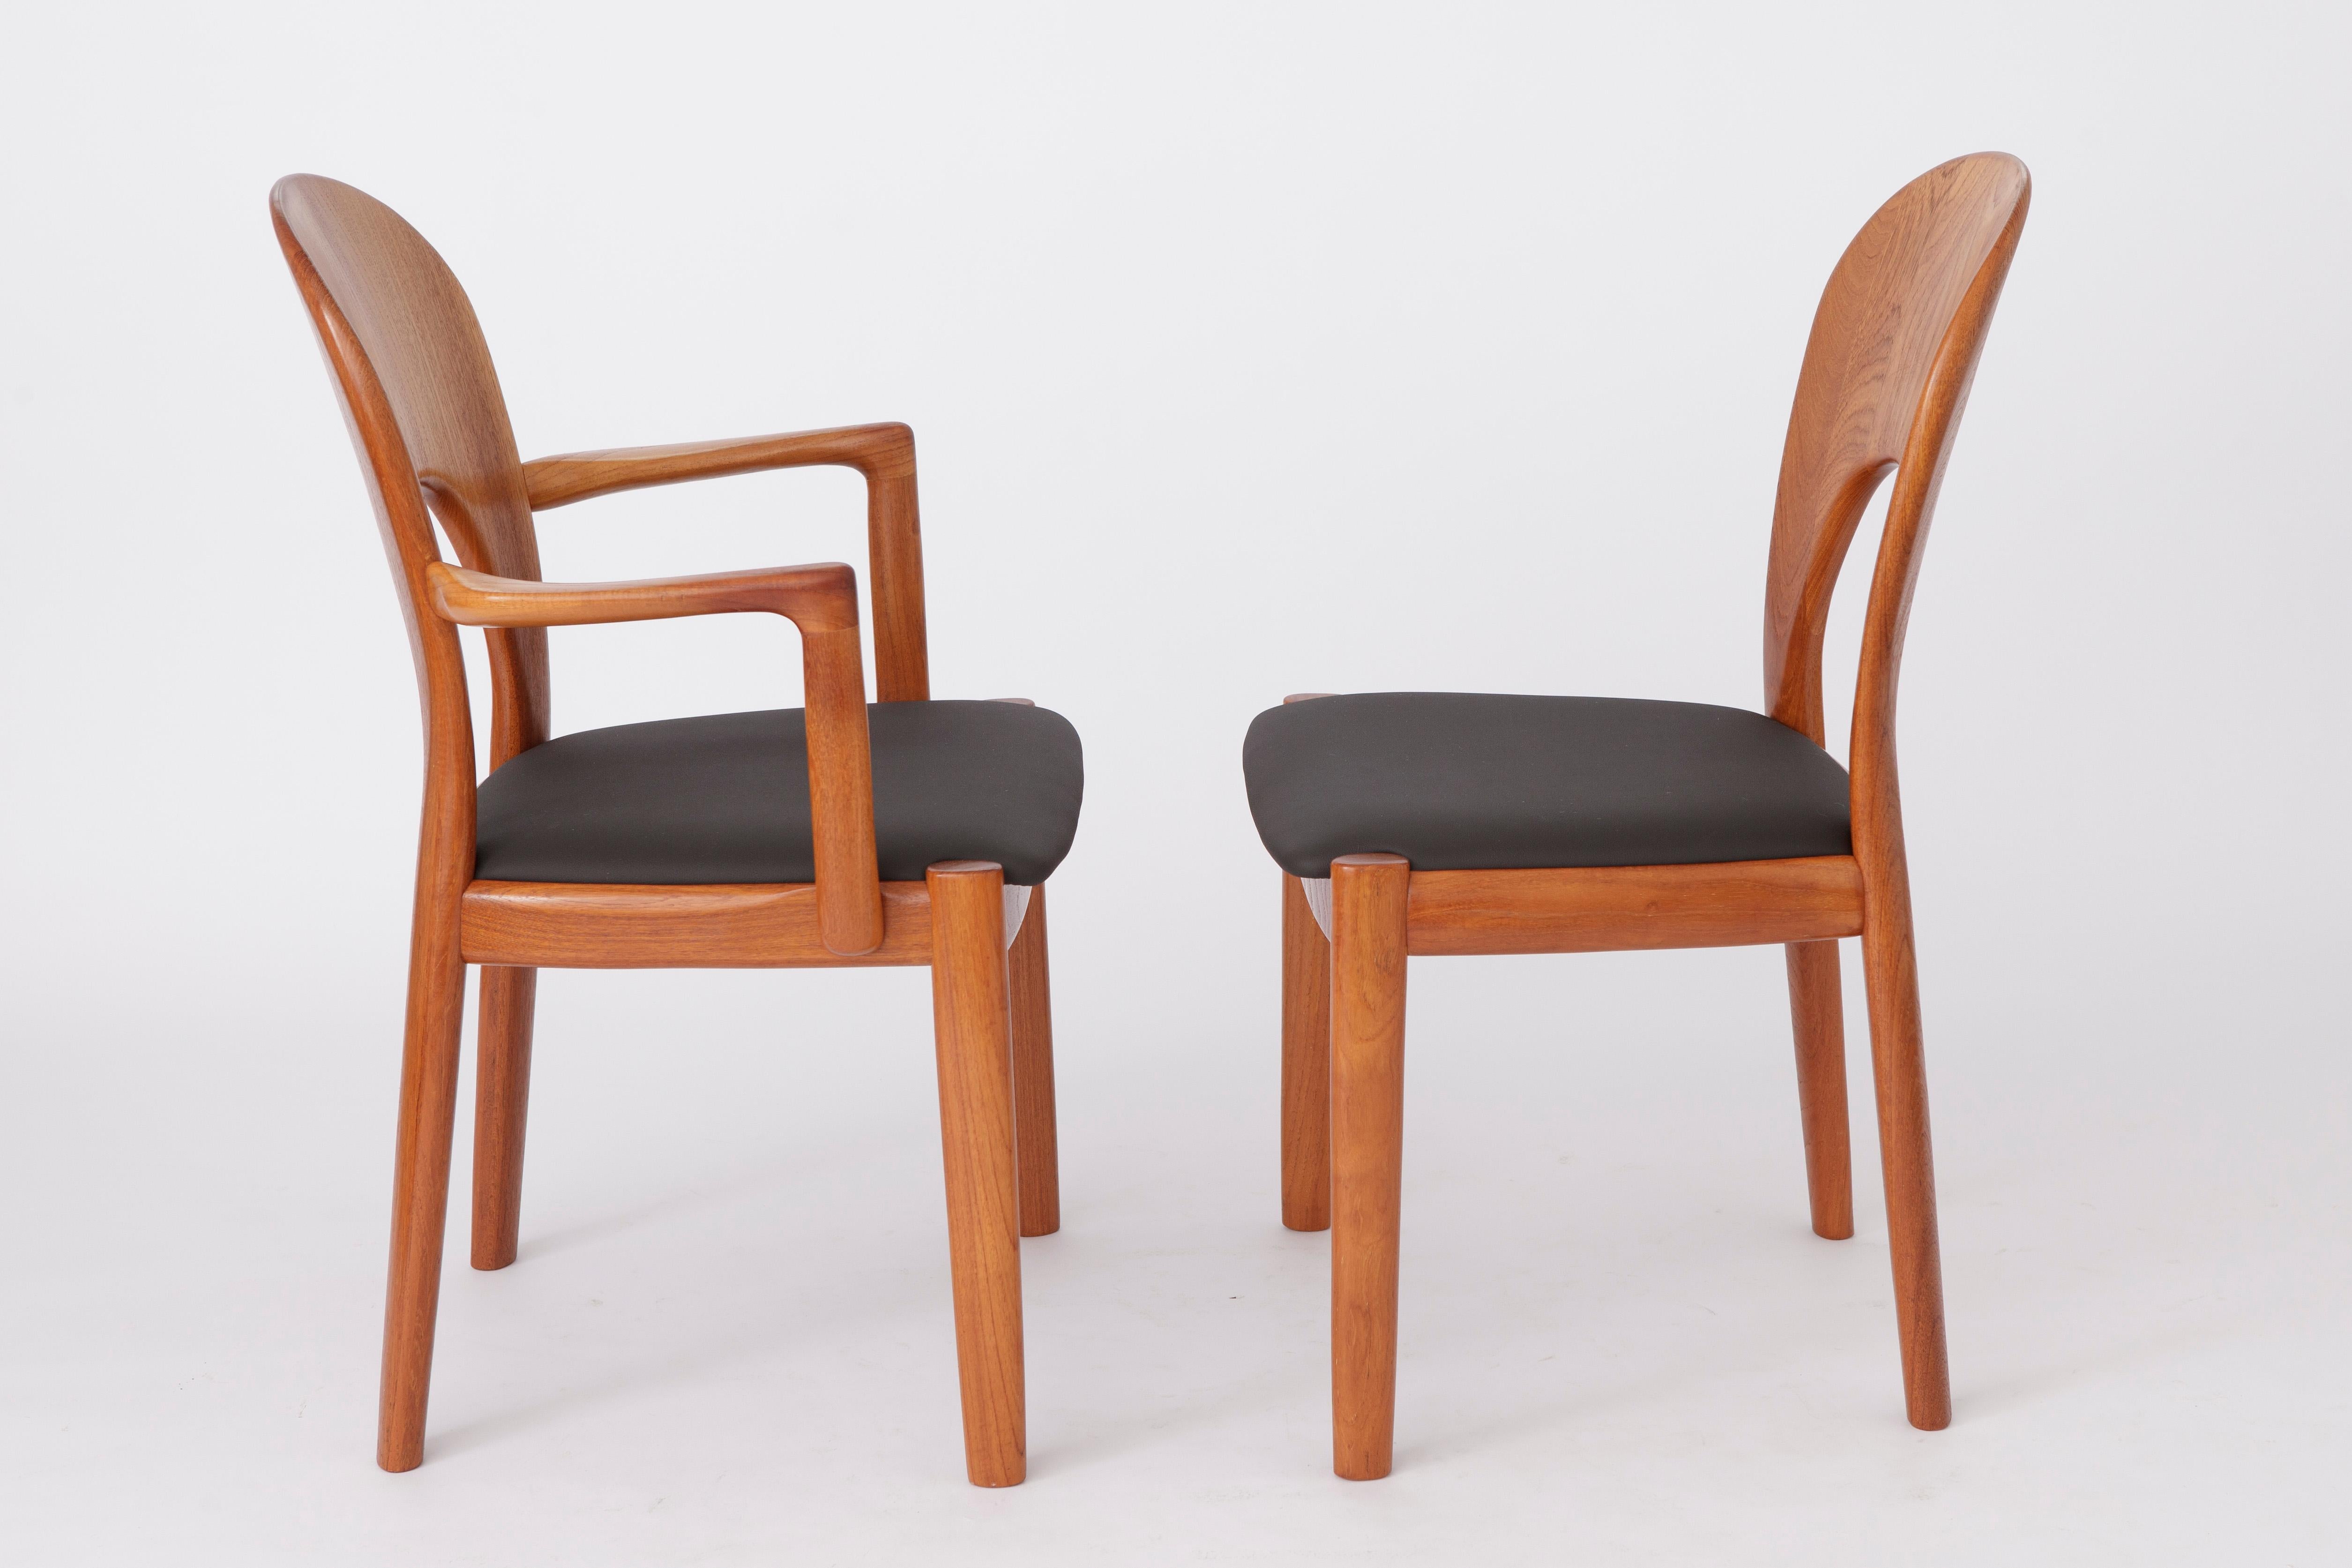 Polished 5 Vintage Chairs by Niels Koefoed 1960s Danish Teak